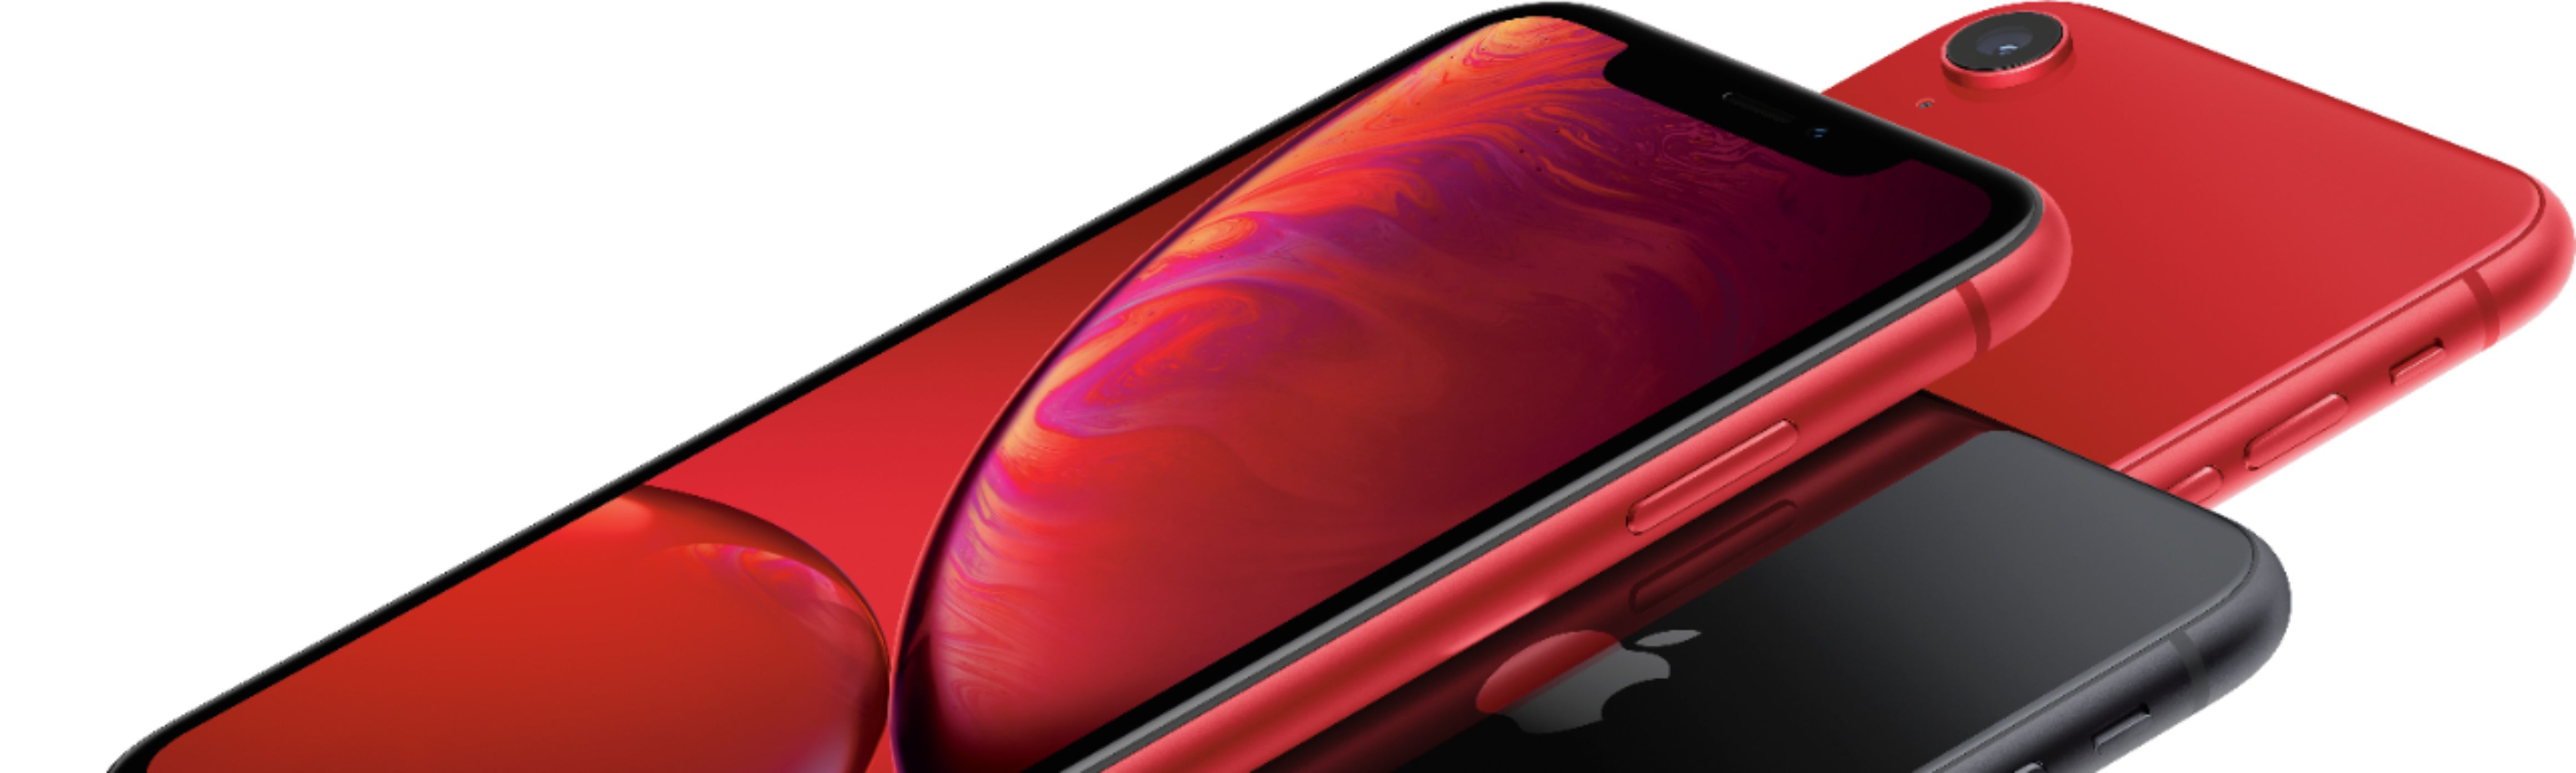 スマートフォン/携帯電話 スマートフォン本体 Best Buy: Apple iPhone XR 64GB (PRODUCT)RED™ (AT&T) MRYU2LL/A